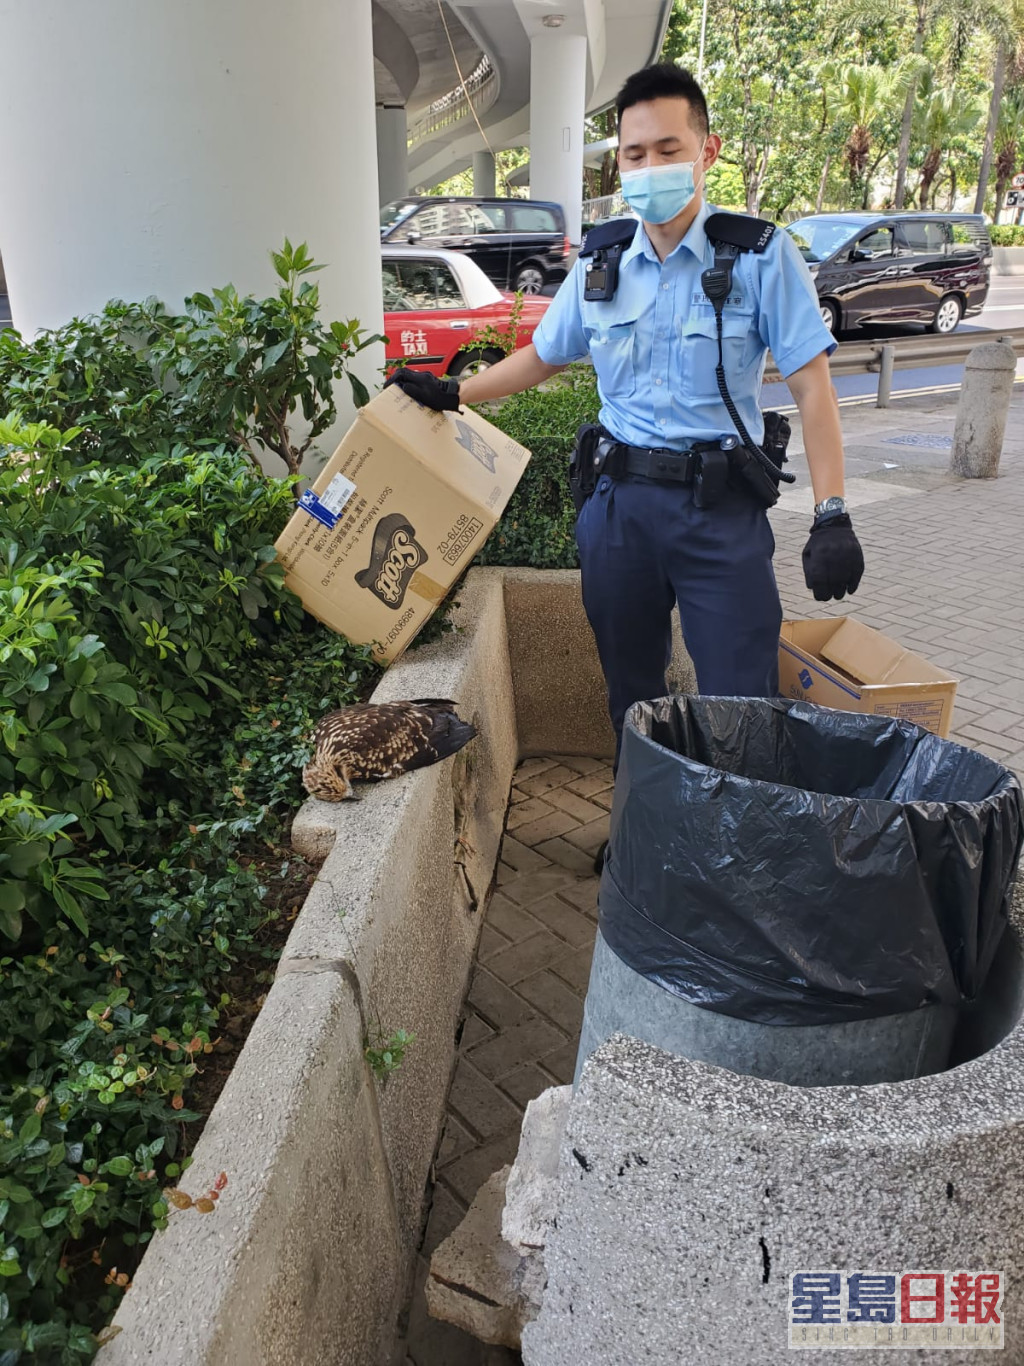 有警員找來紙皮箱備用。